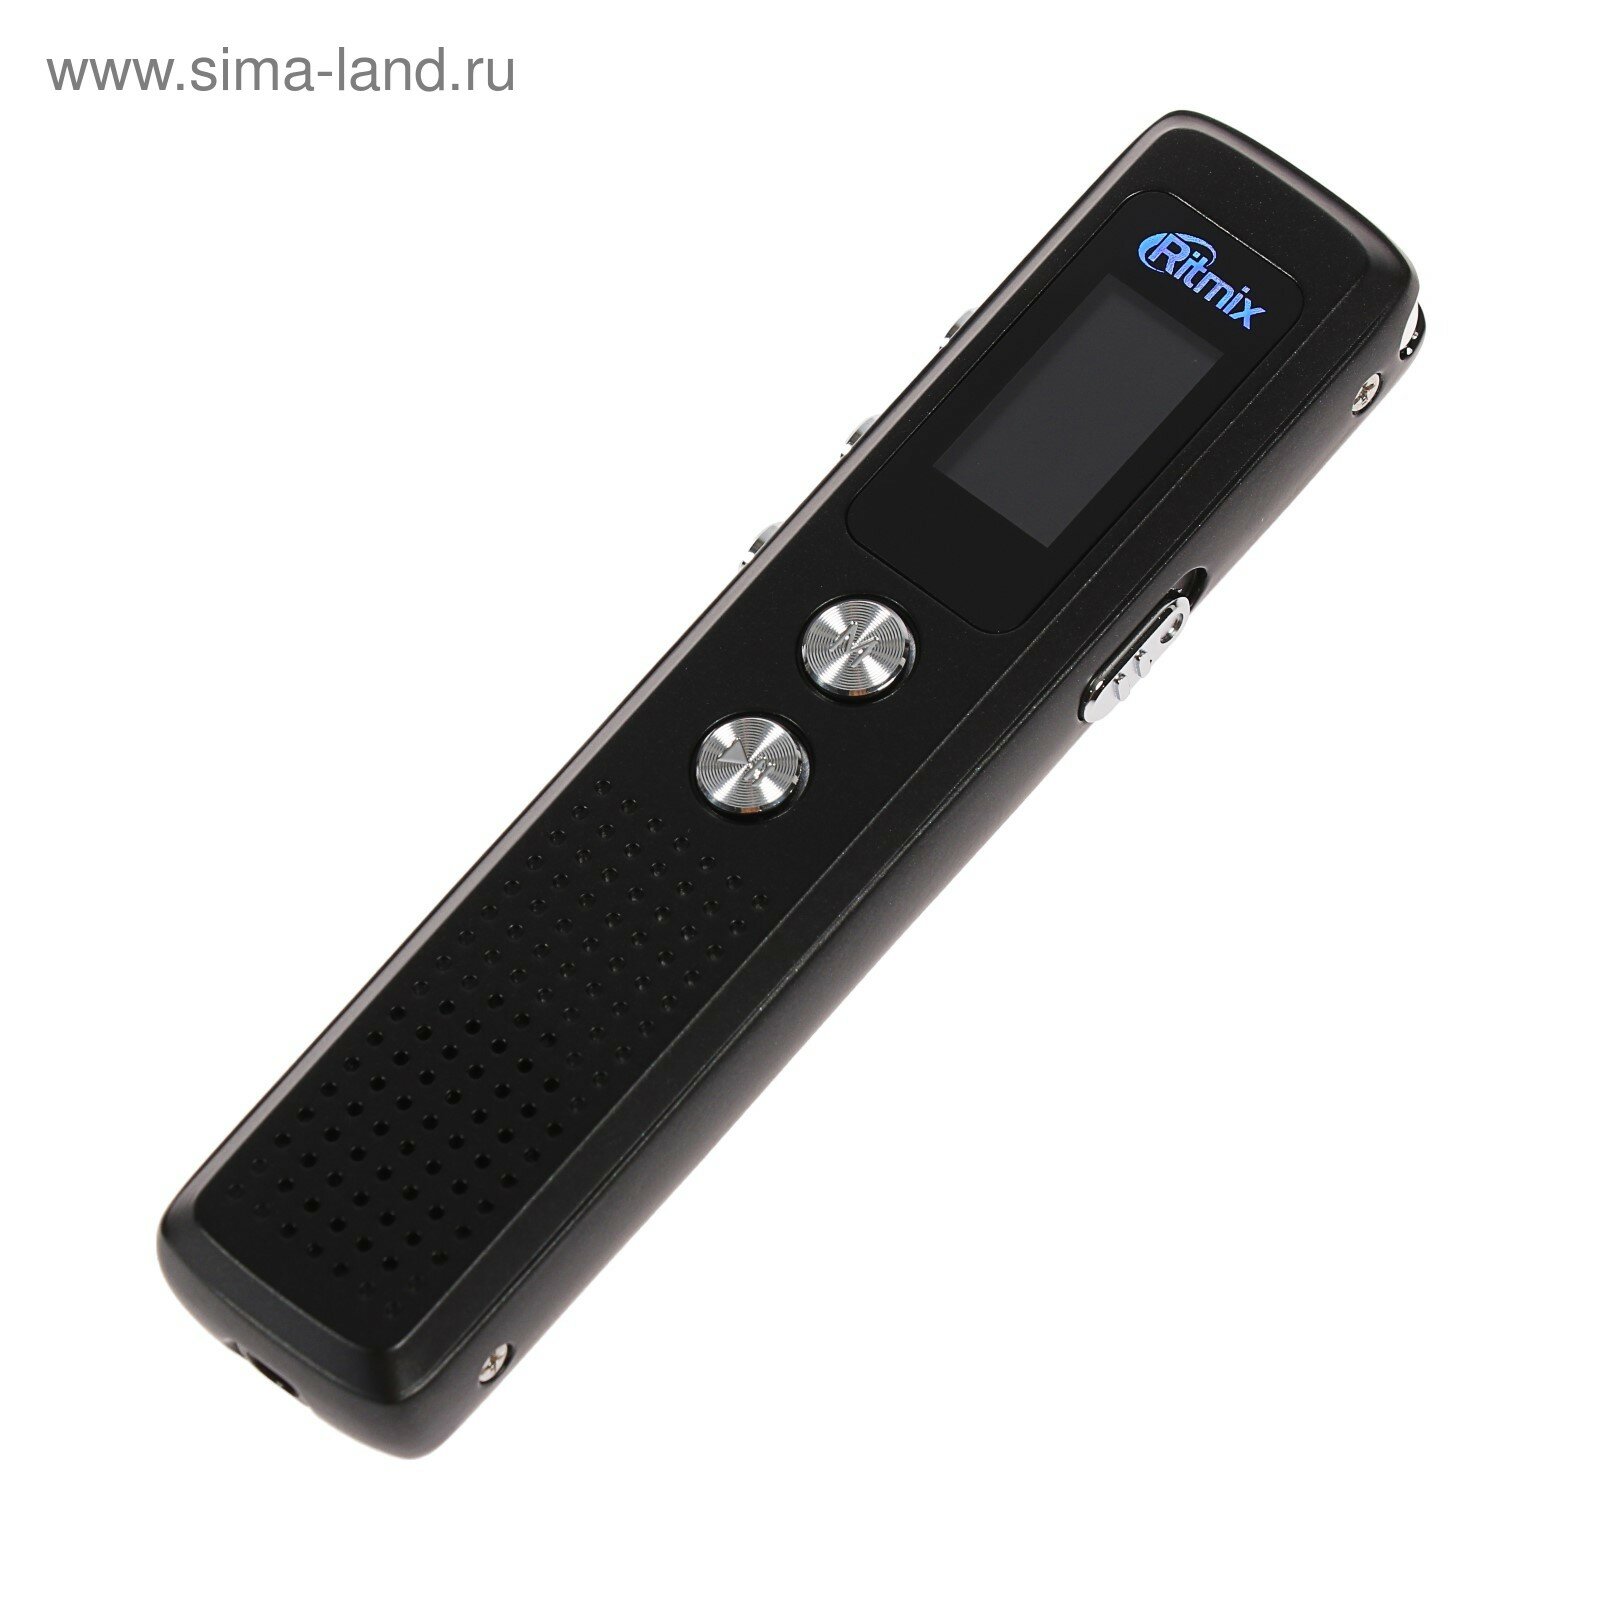 Диктофон RR-120 4GB MP3/WAV дисплей металл корпус черный